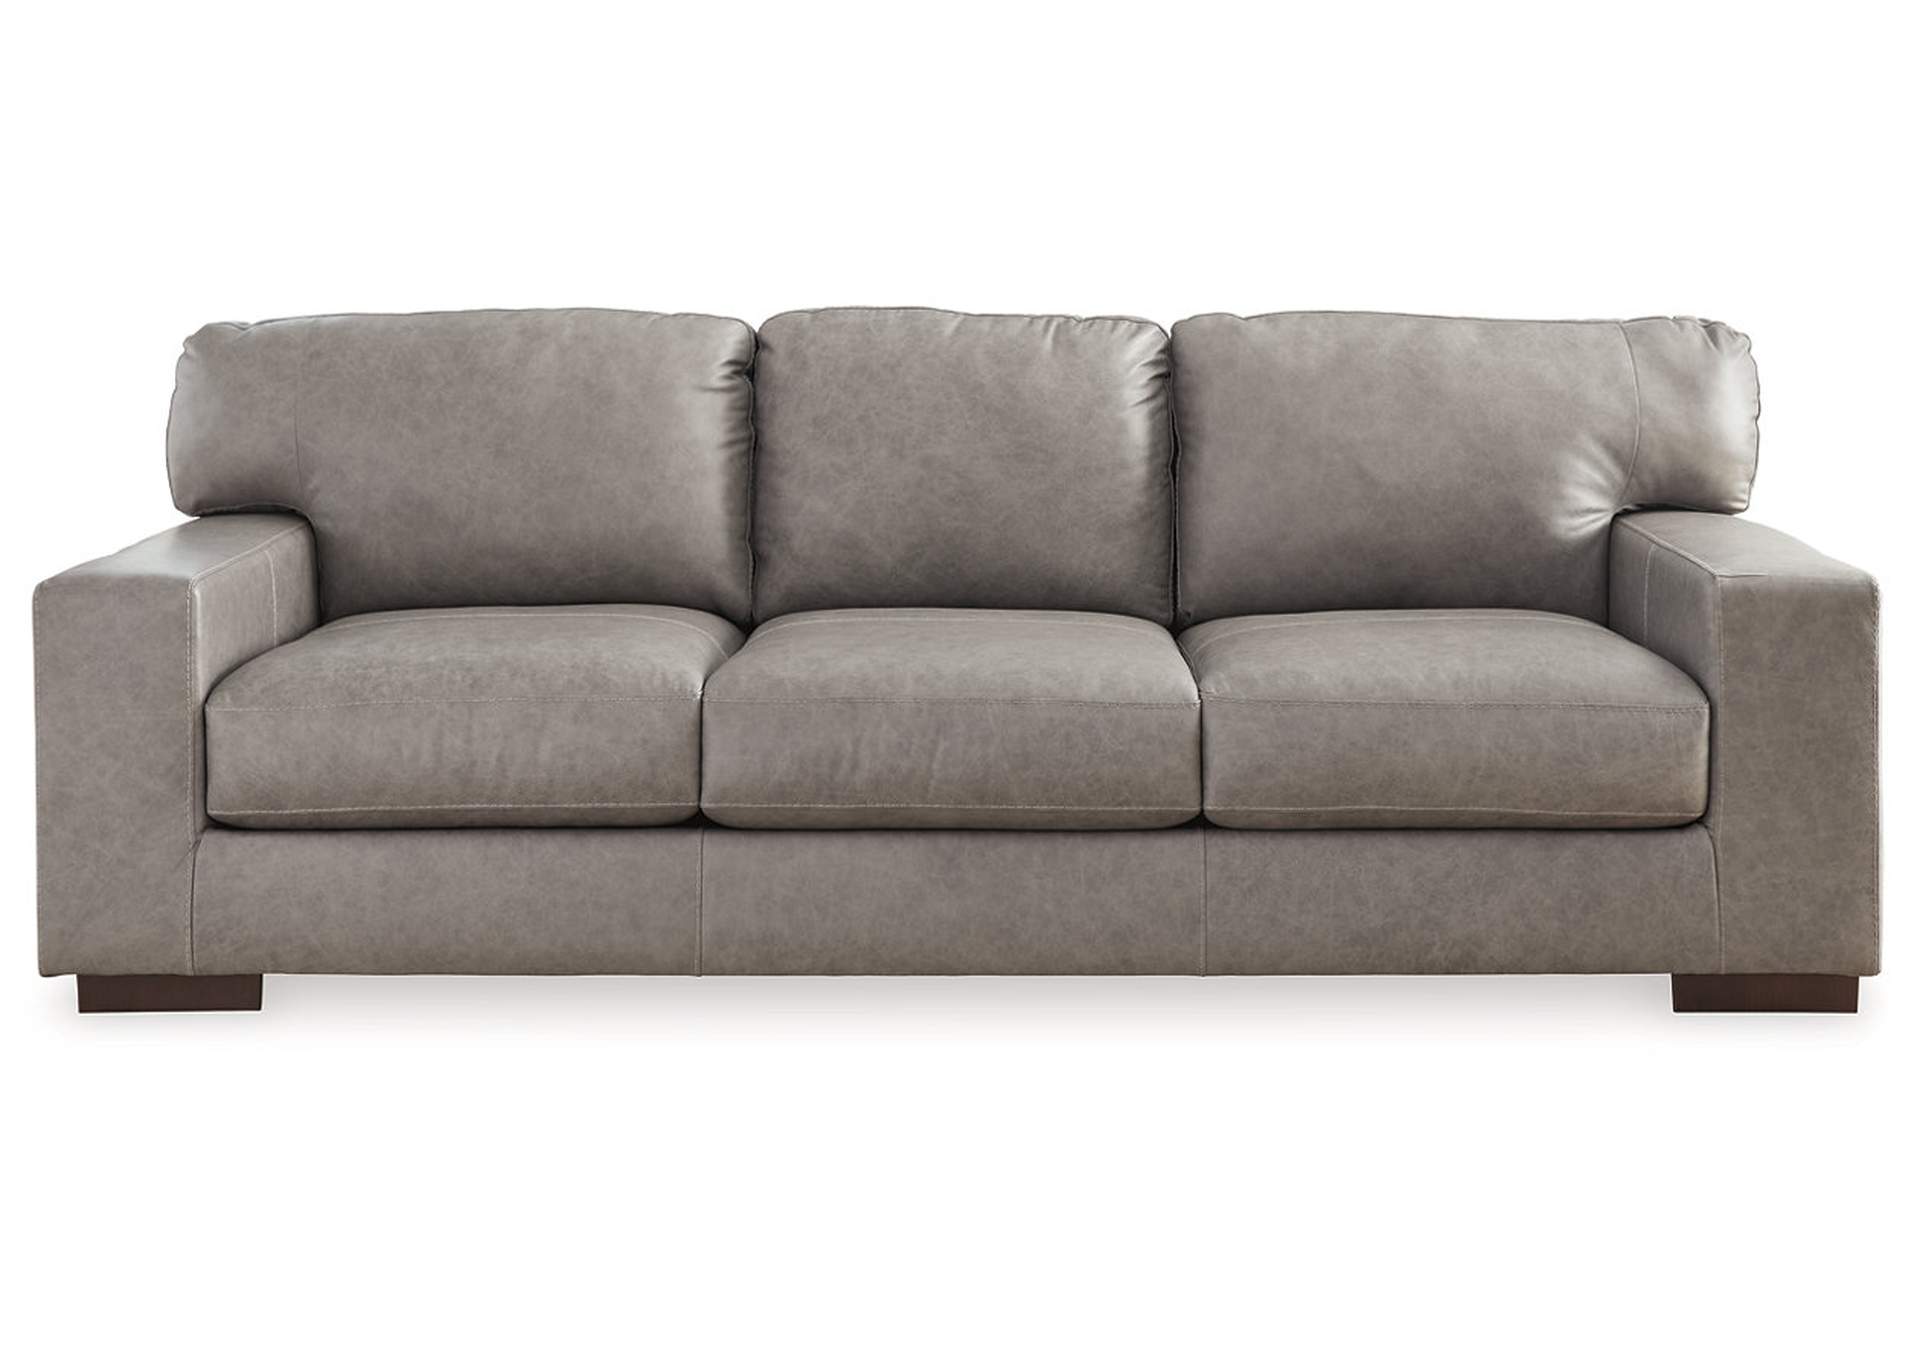 Lombardia Sofa,Millennium